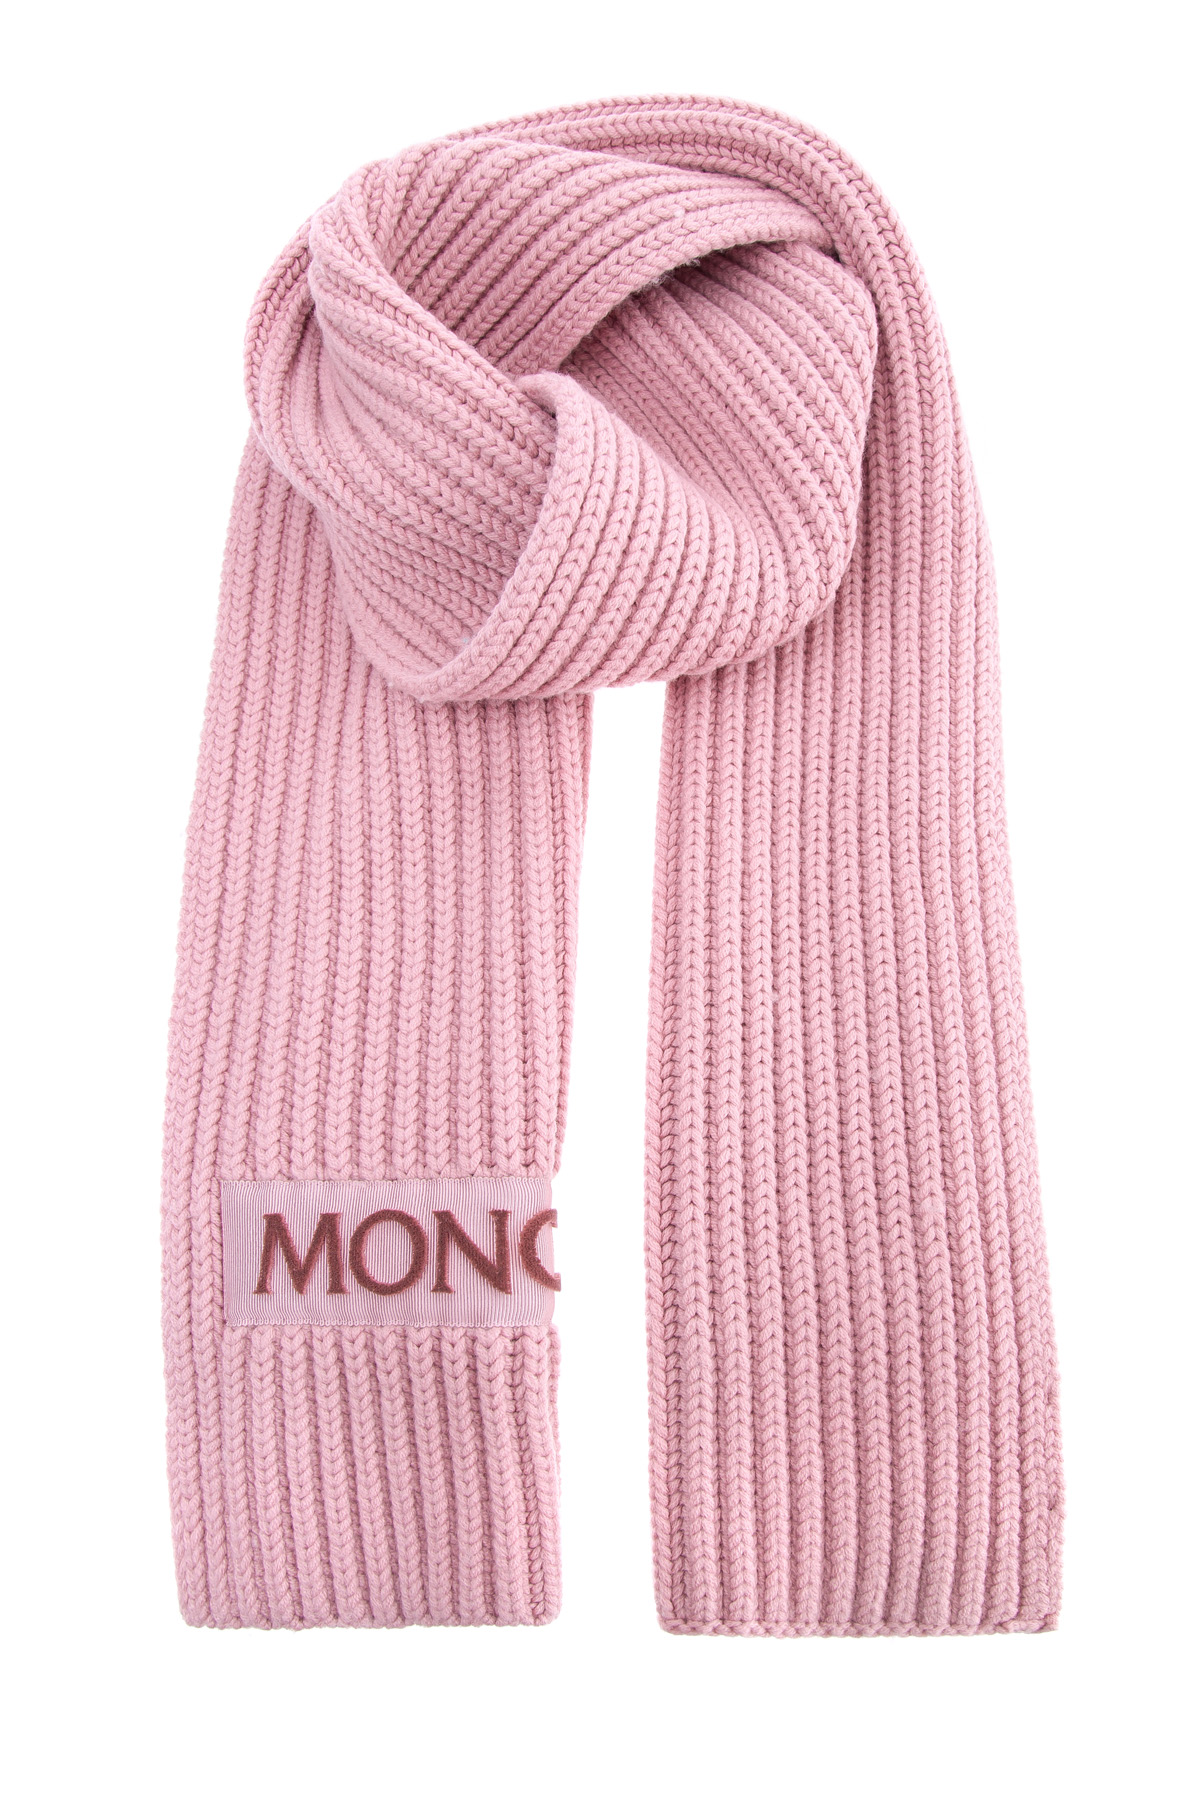 Шарф из шерсти в технике английской резинки с символикой бренда MONCLER, цвет розовый, размер 42;42.5;43.5